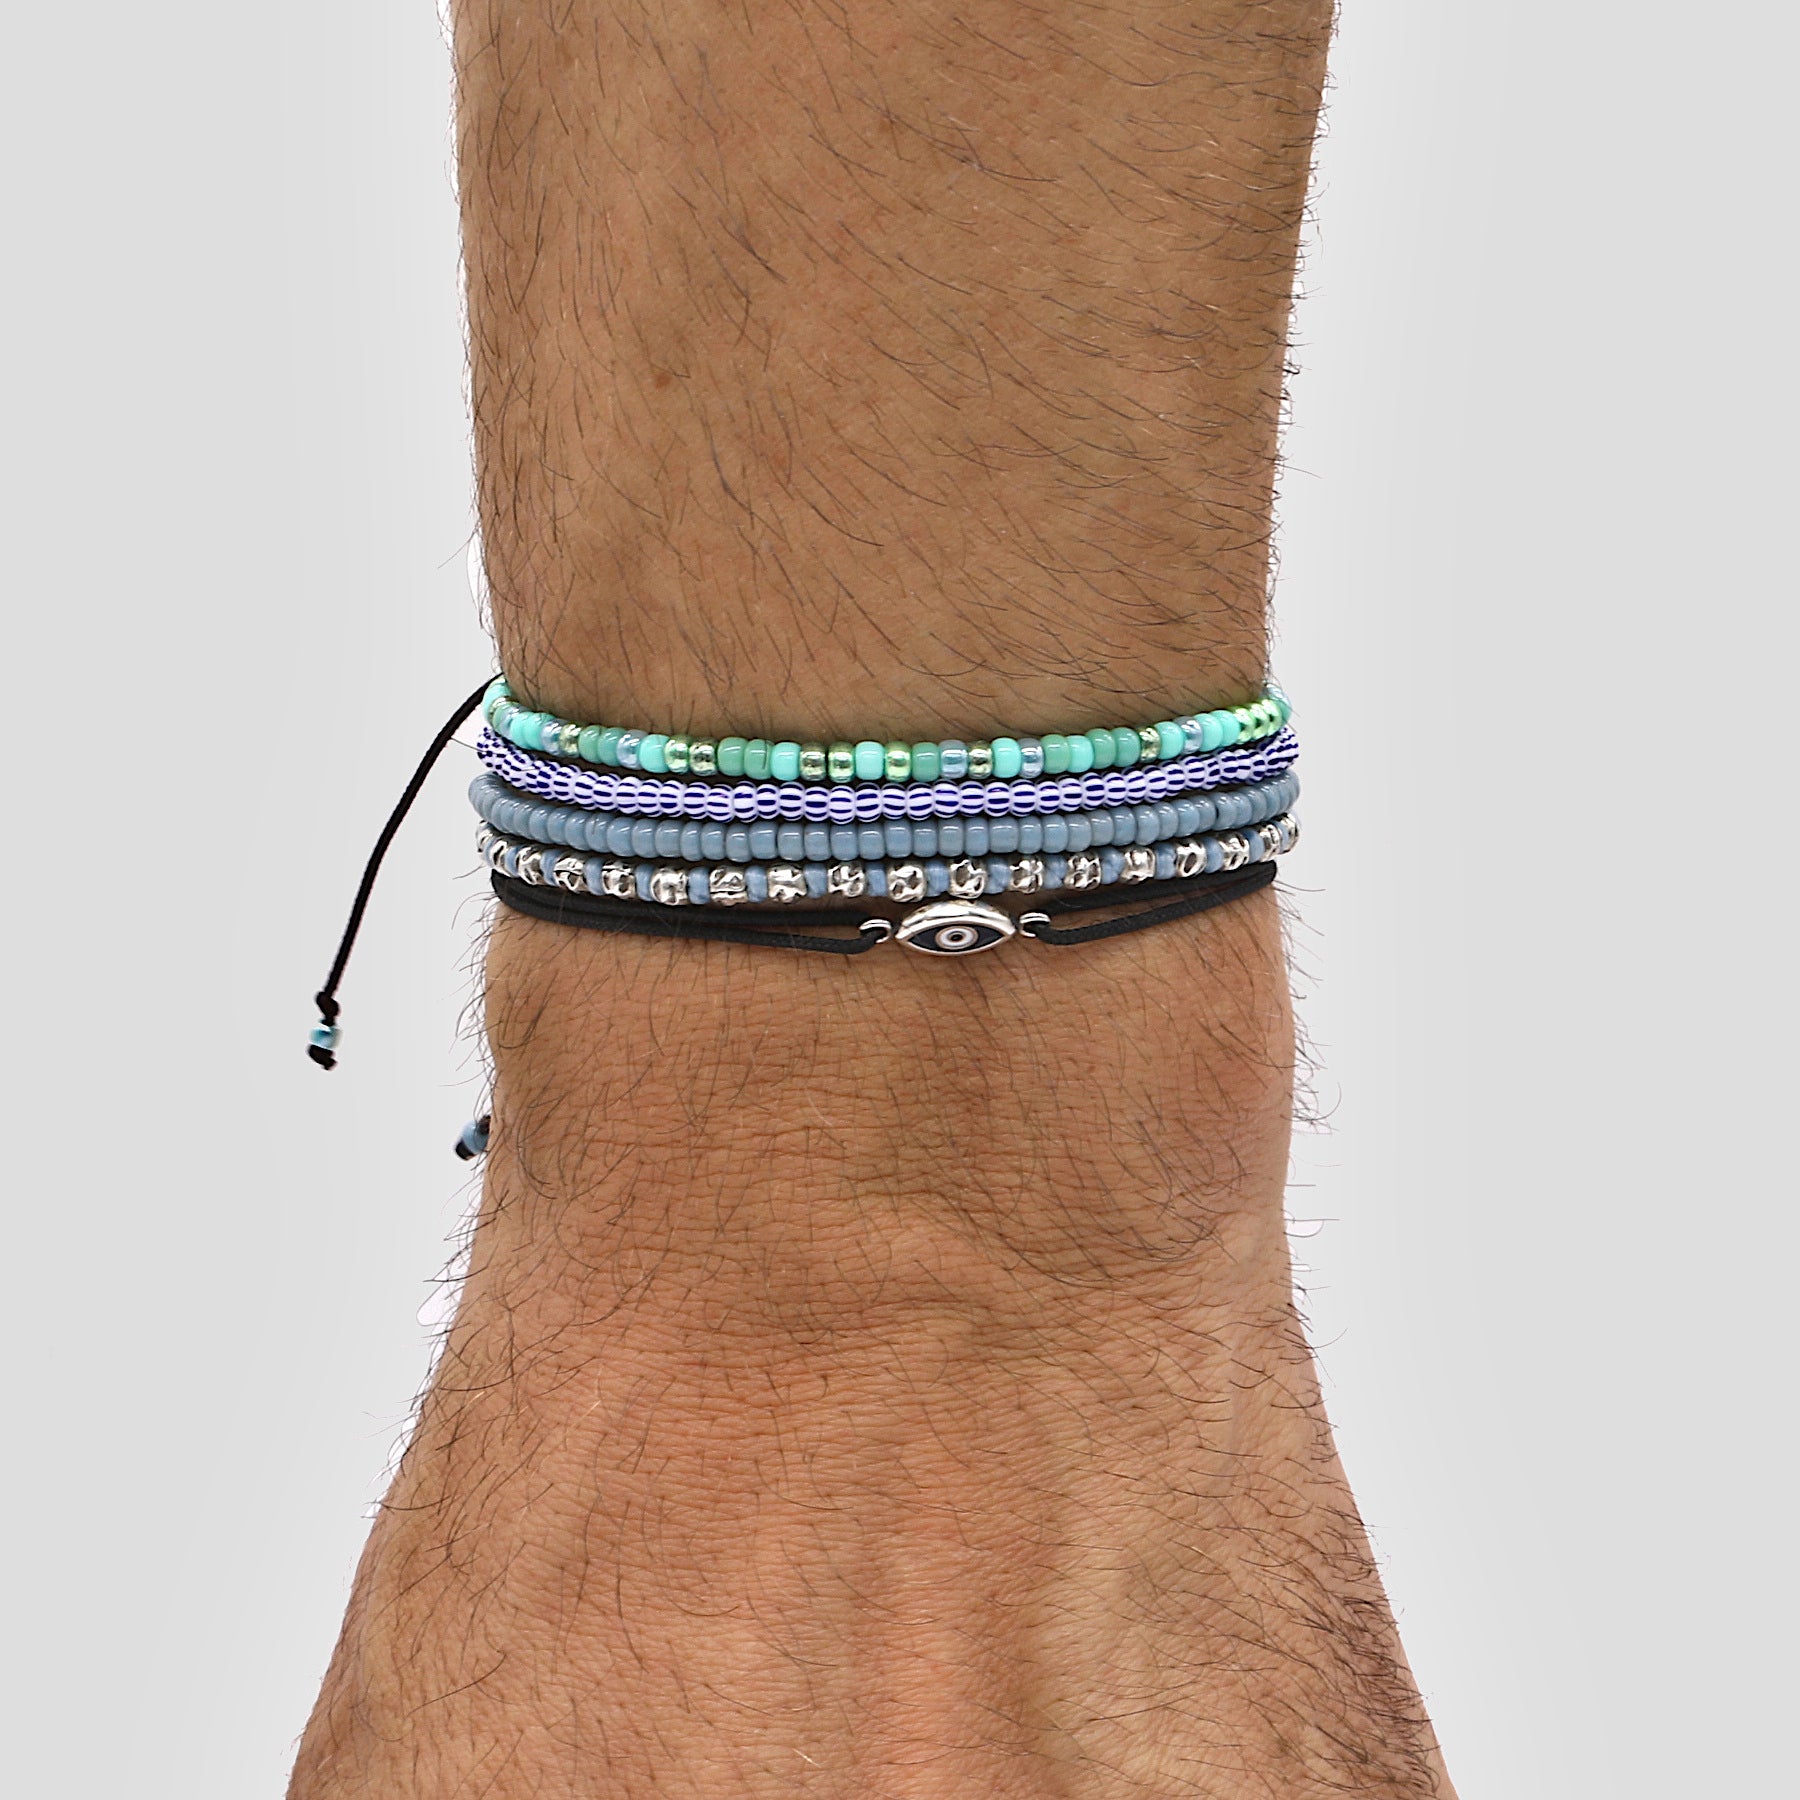 2mm Glass Beads Adjustable Bracelet (Dusty Blue)-Bracelet-Kompsós